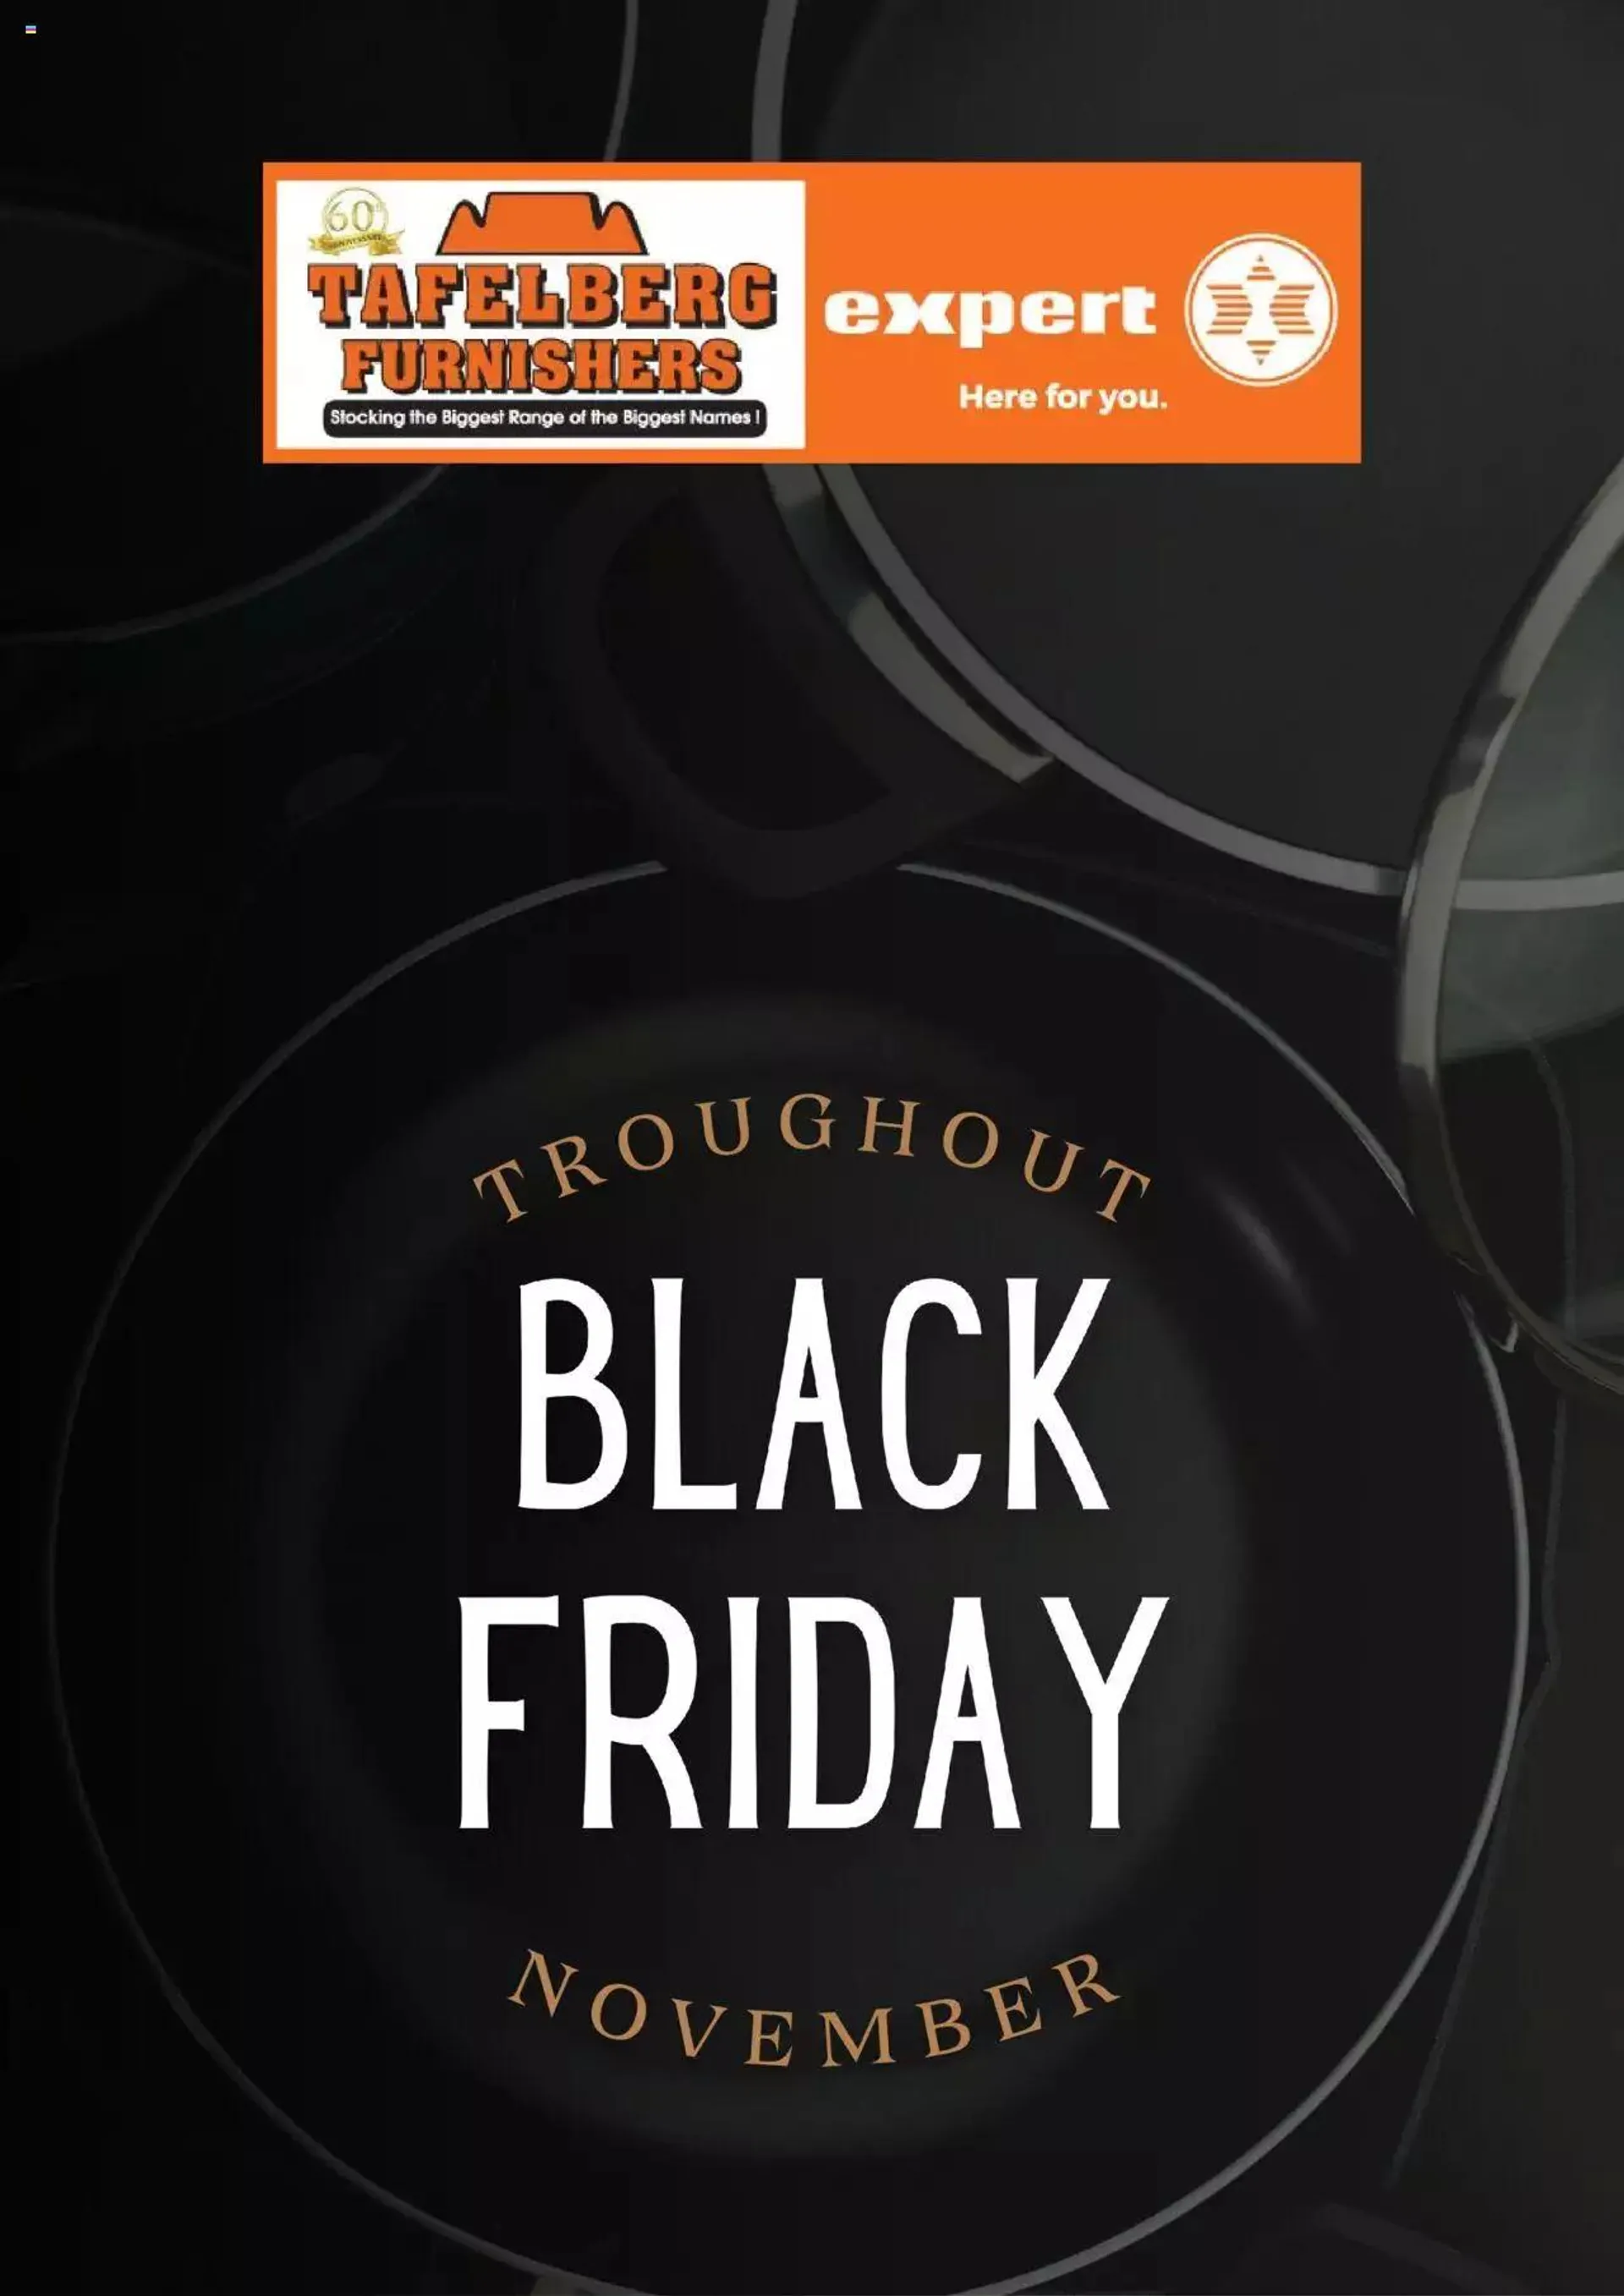 Tafelberg Furnishers - Black Friday